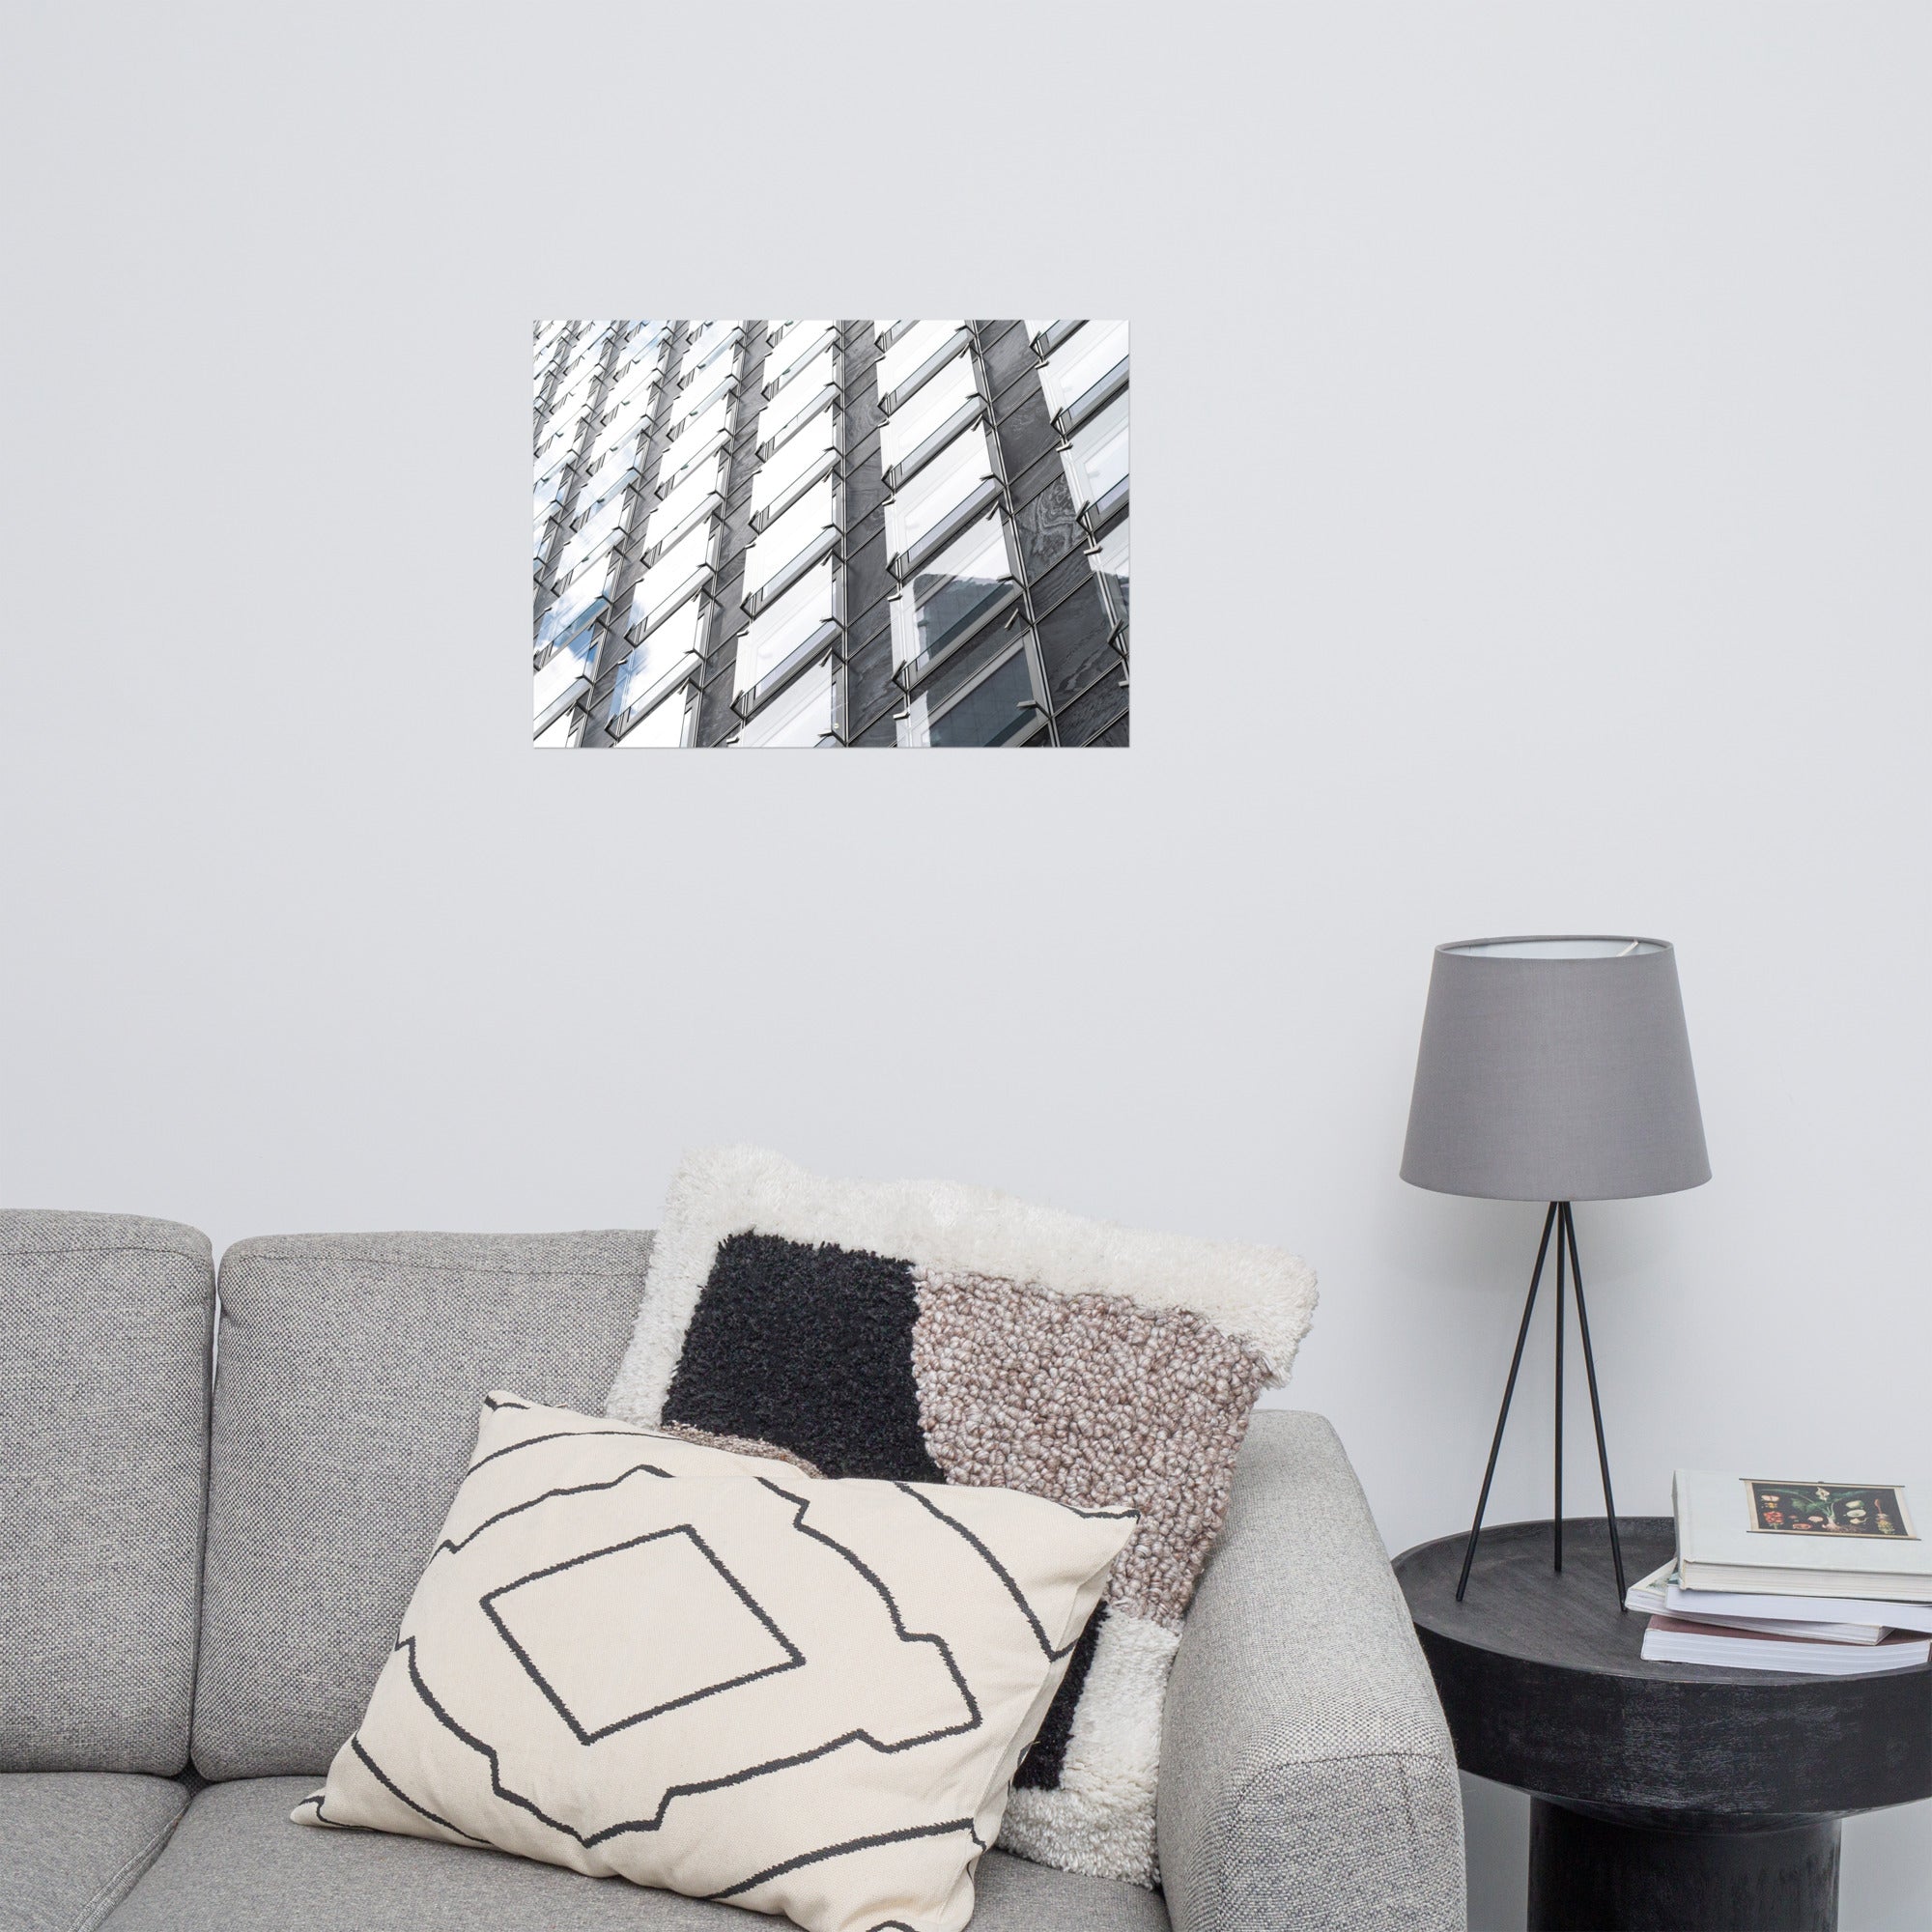 Photographie architecturale 'Jeu d'échecs', capturant des façades vitrées dans un jeu de réflexions et de symétrie.